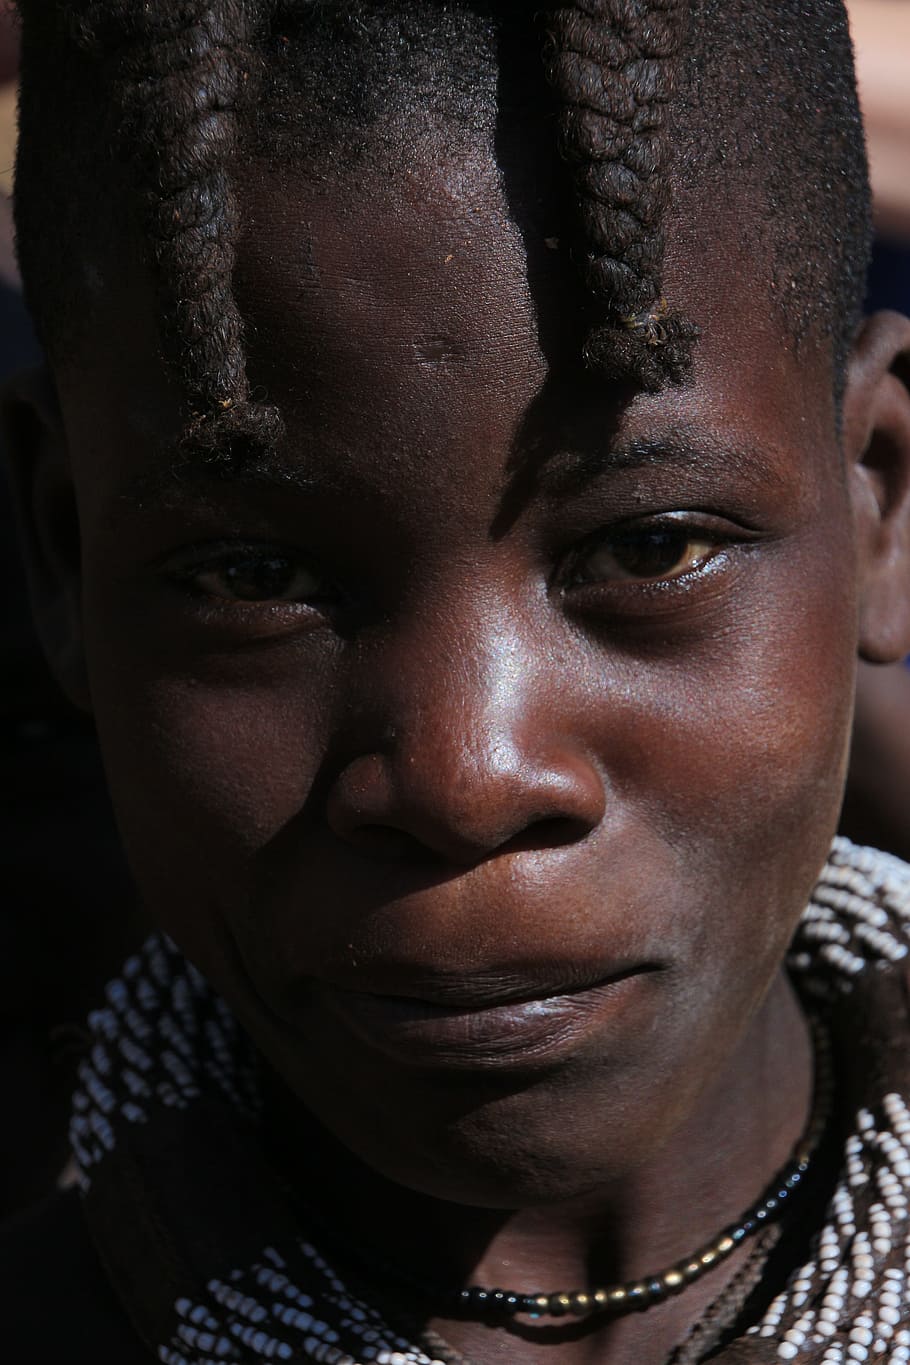 クローズアップ写真, 人間, 顔, ナミビア, ヒンバ, アフリカ, 先住民族, フライ, ネグロ, サハラ以南のアフリカ